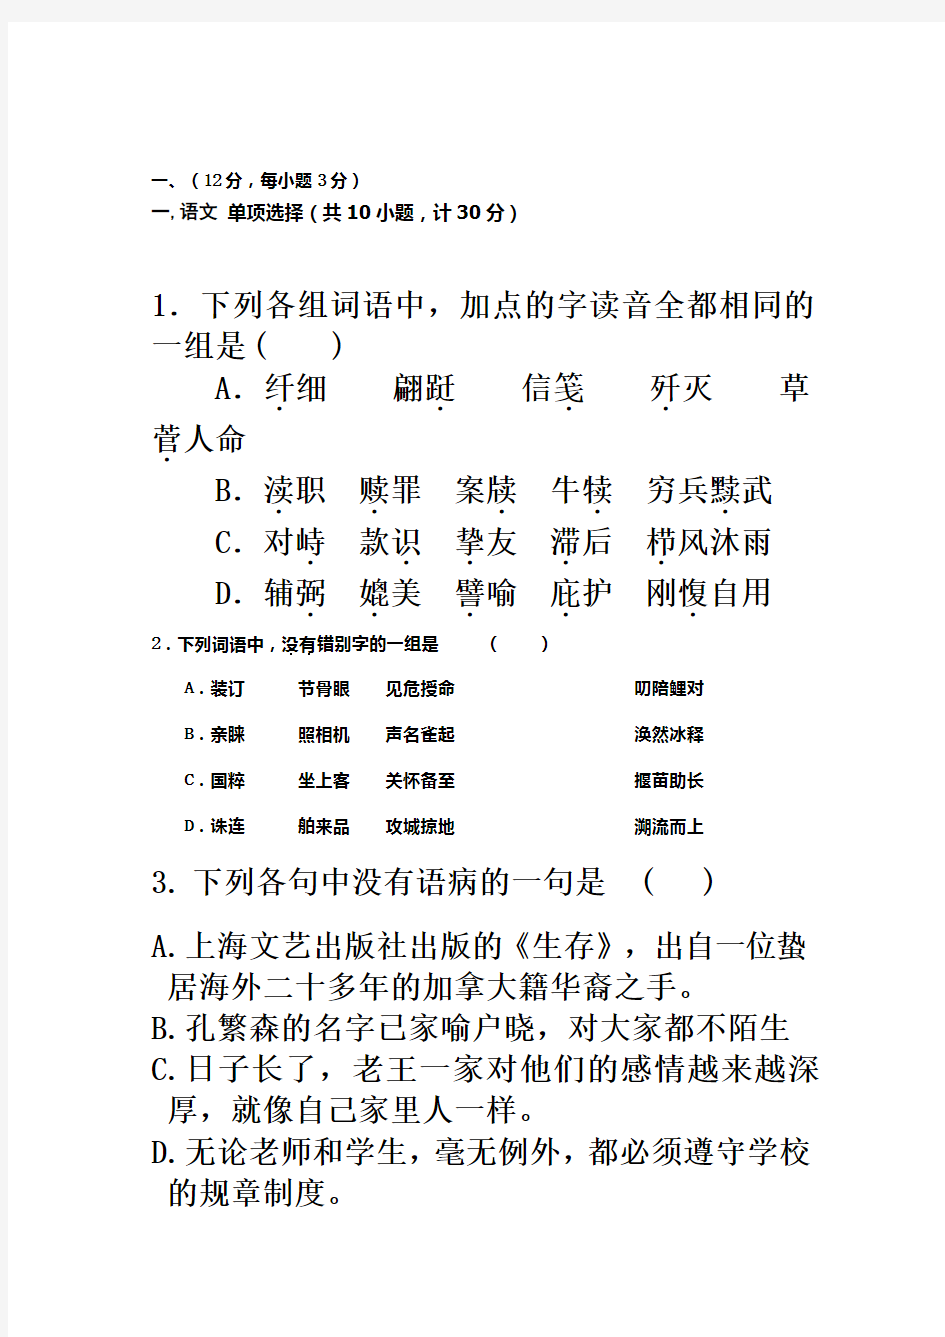 2016四川高职单招语文测试题(含答案)(同名10366)